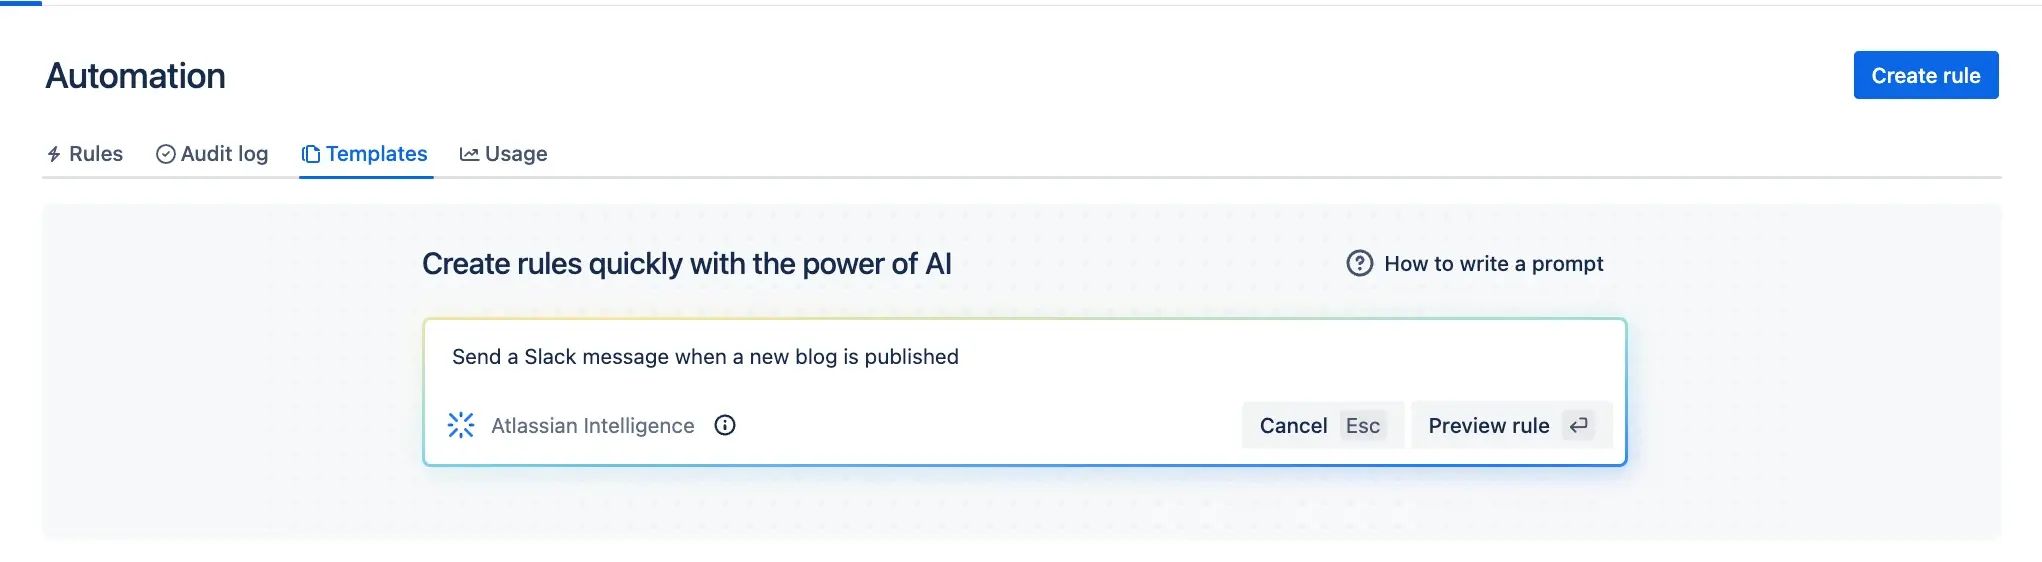 Esempio 1 di automazione con Atlassian AI